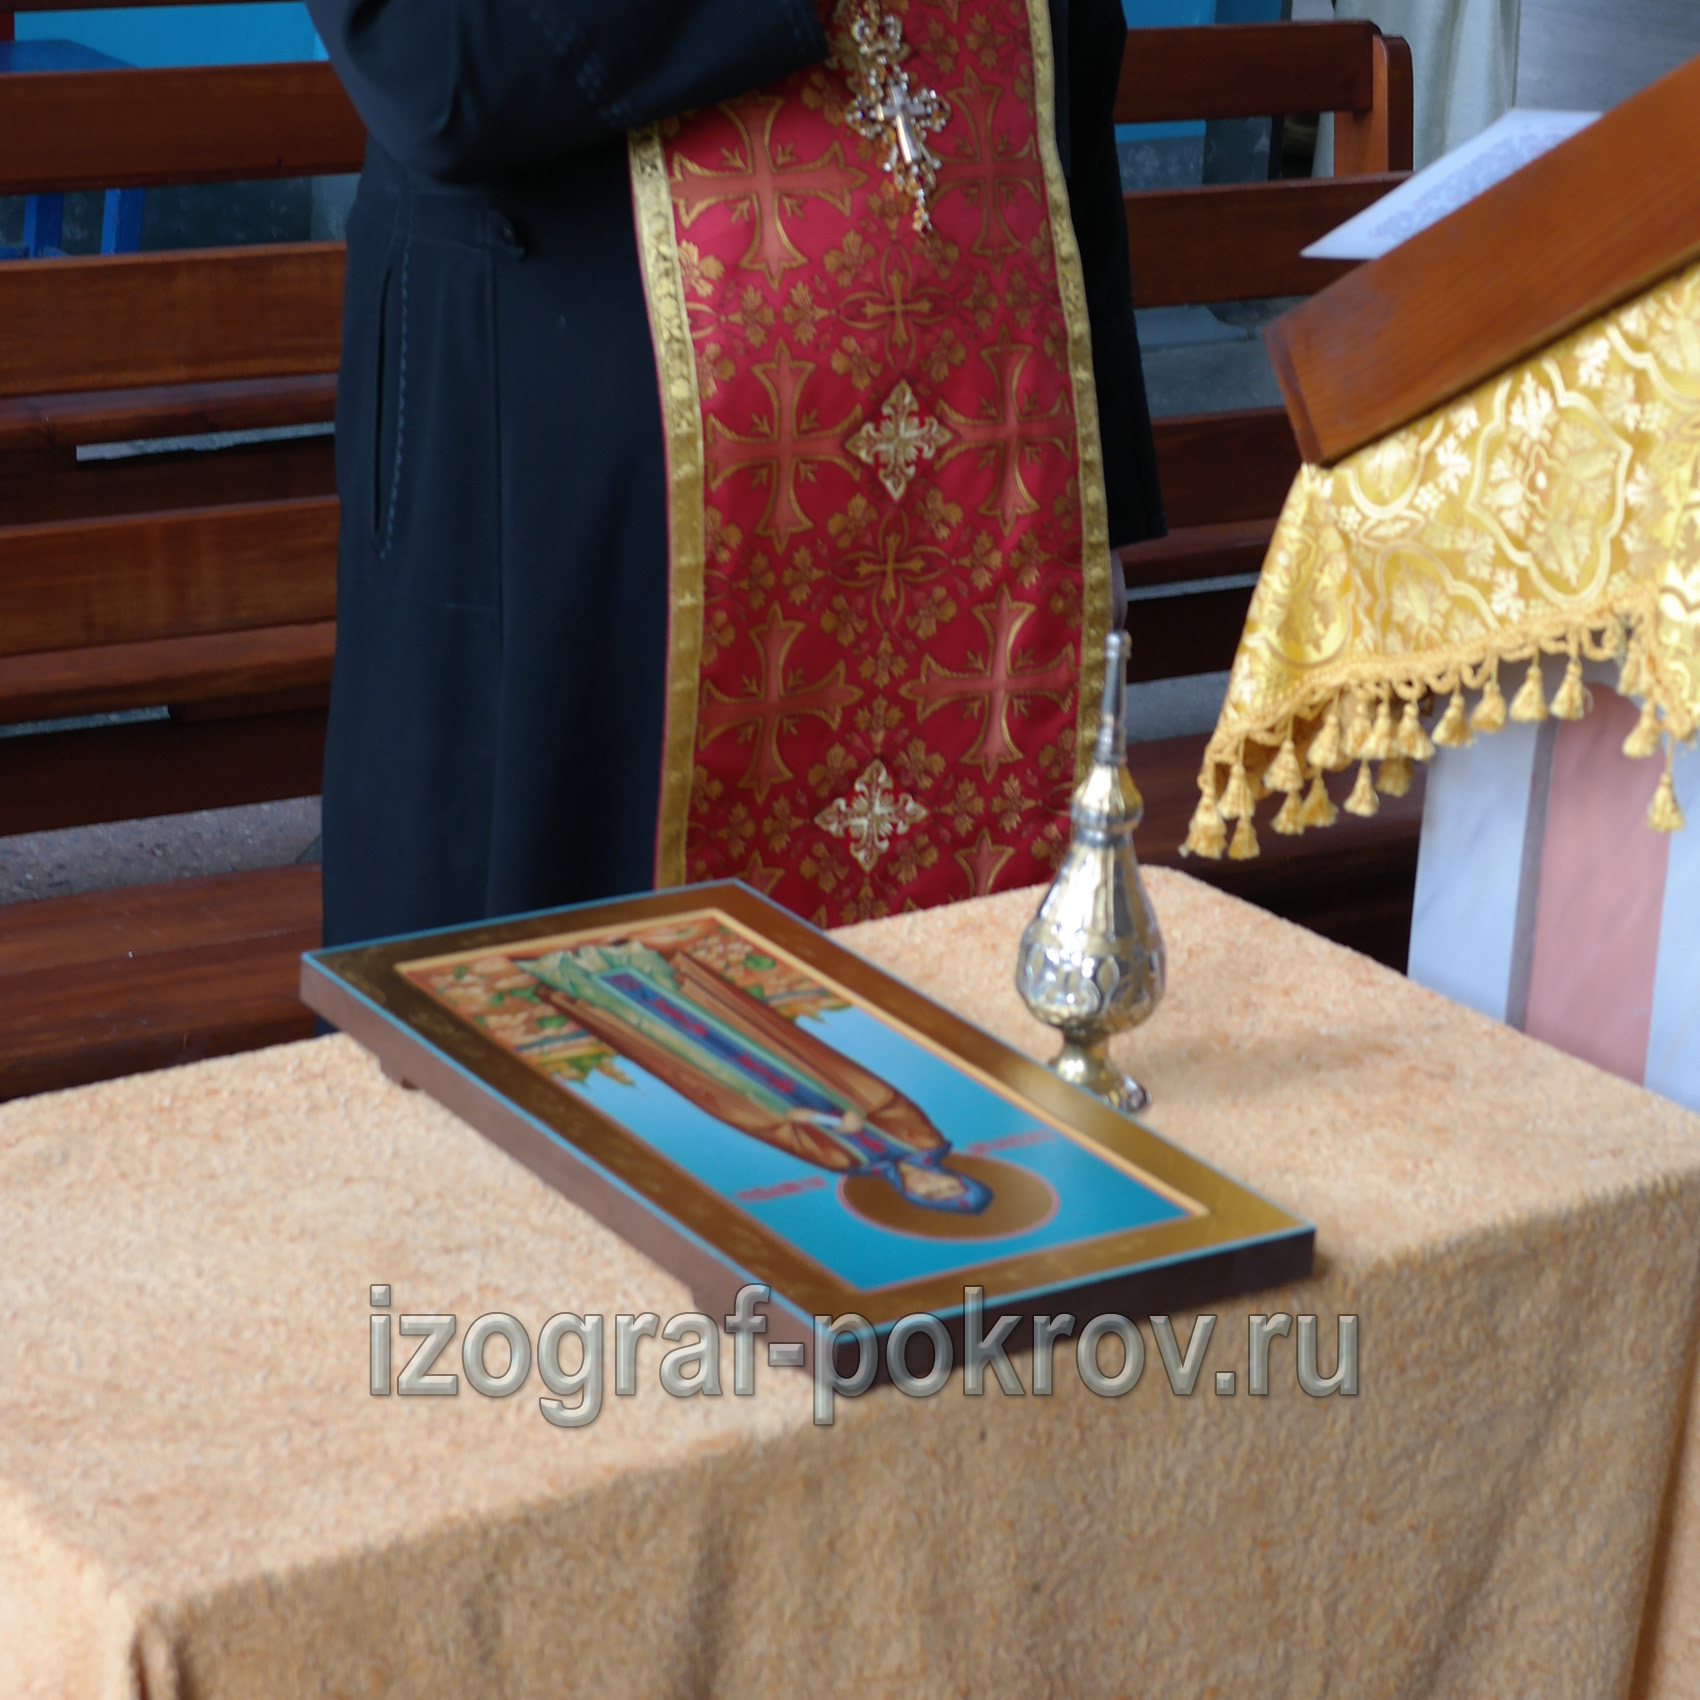 После завершения работы над иконой Анны Новгородской икона освящается в храме Покрова Пресвятой Богородицы